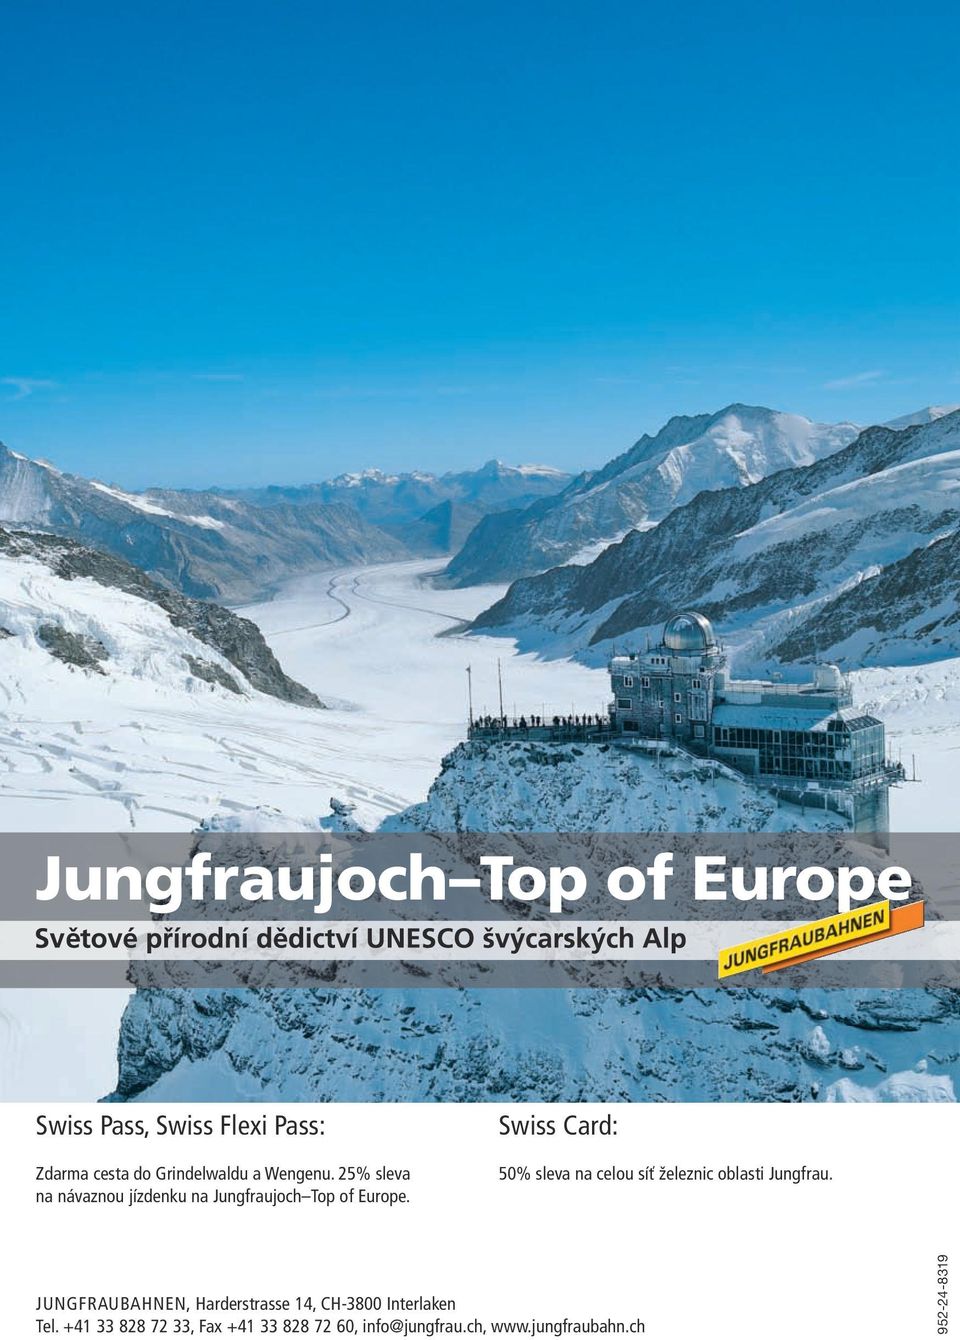 Swiss Card: 50% sleva na celou síť železnic oblasti Jungfrau.